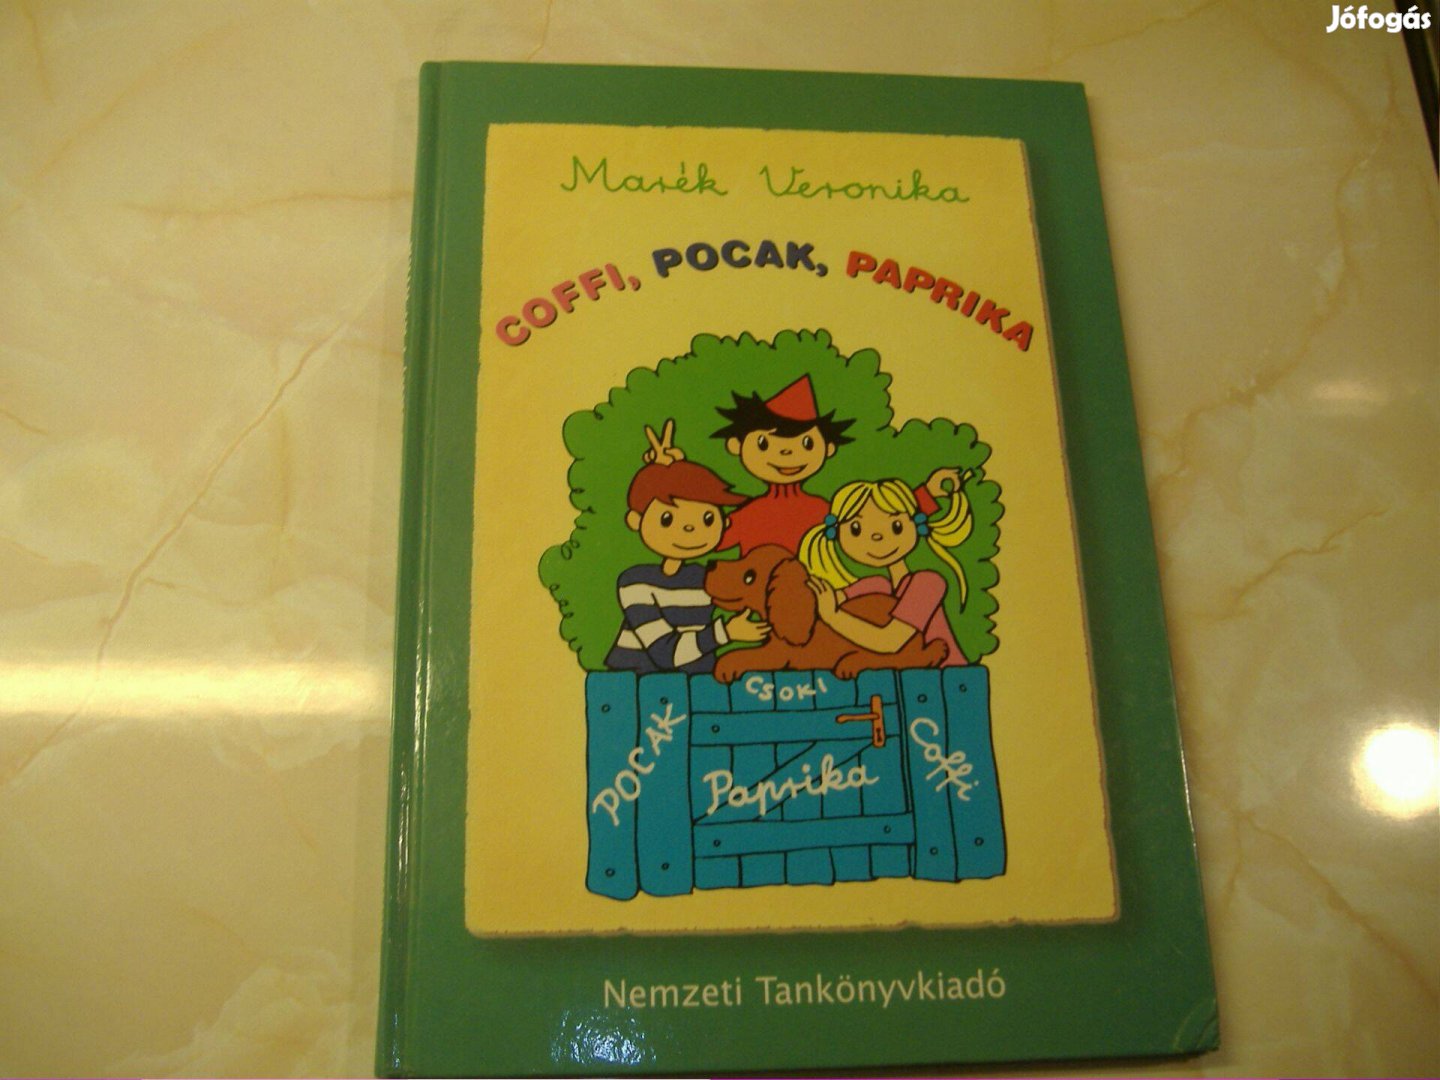 Marék Veronika Coffi, Pocak, Paprika, 2008 Gyermekkönyv, meséskönyv